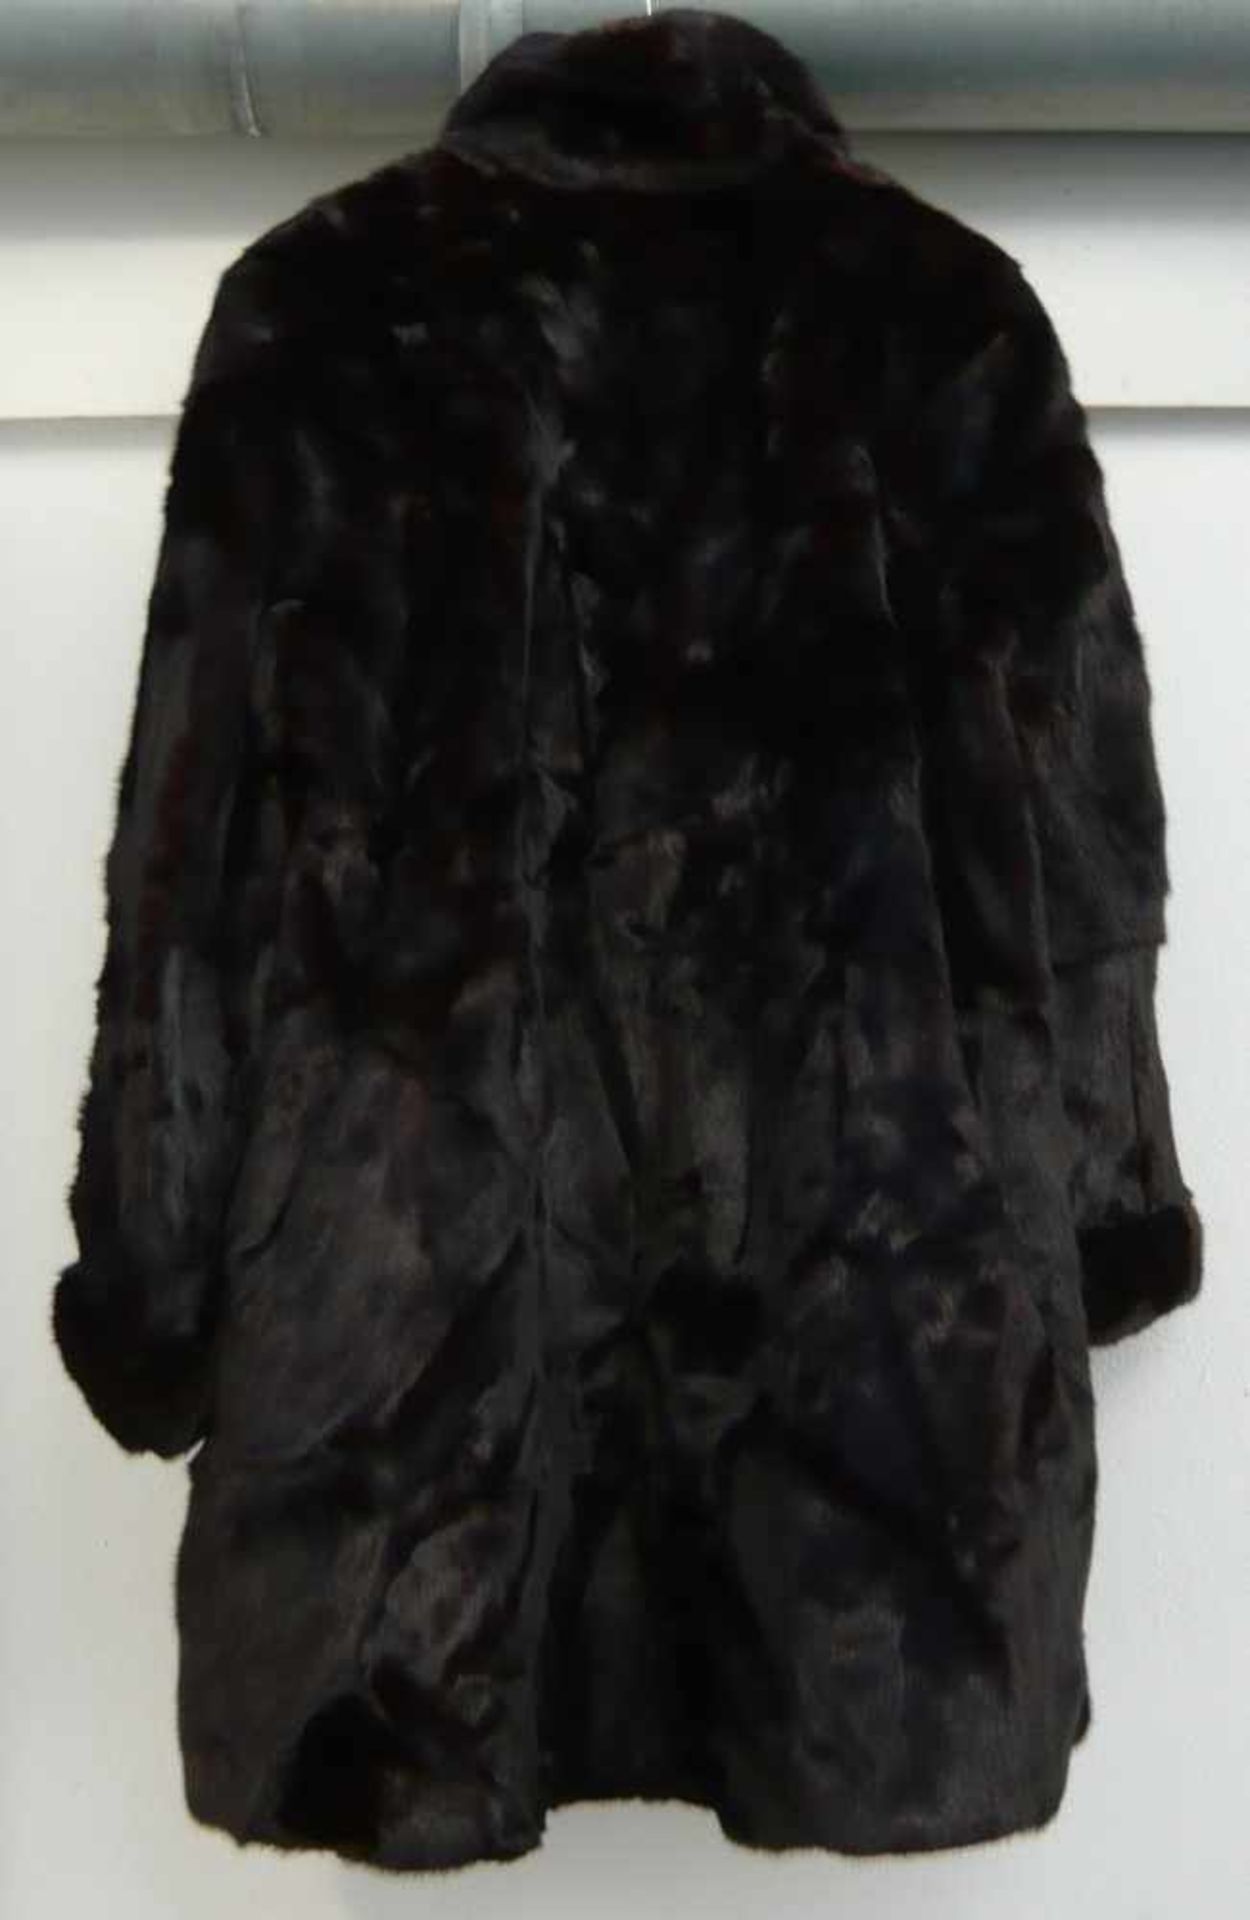 Schwarze Jacke aus Nerz. Vintage.Black mink jacket. Vintage. - Bild 2 aus 2